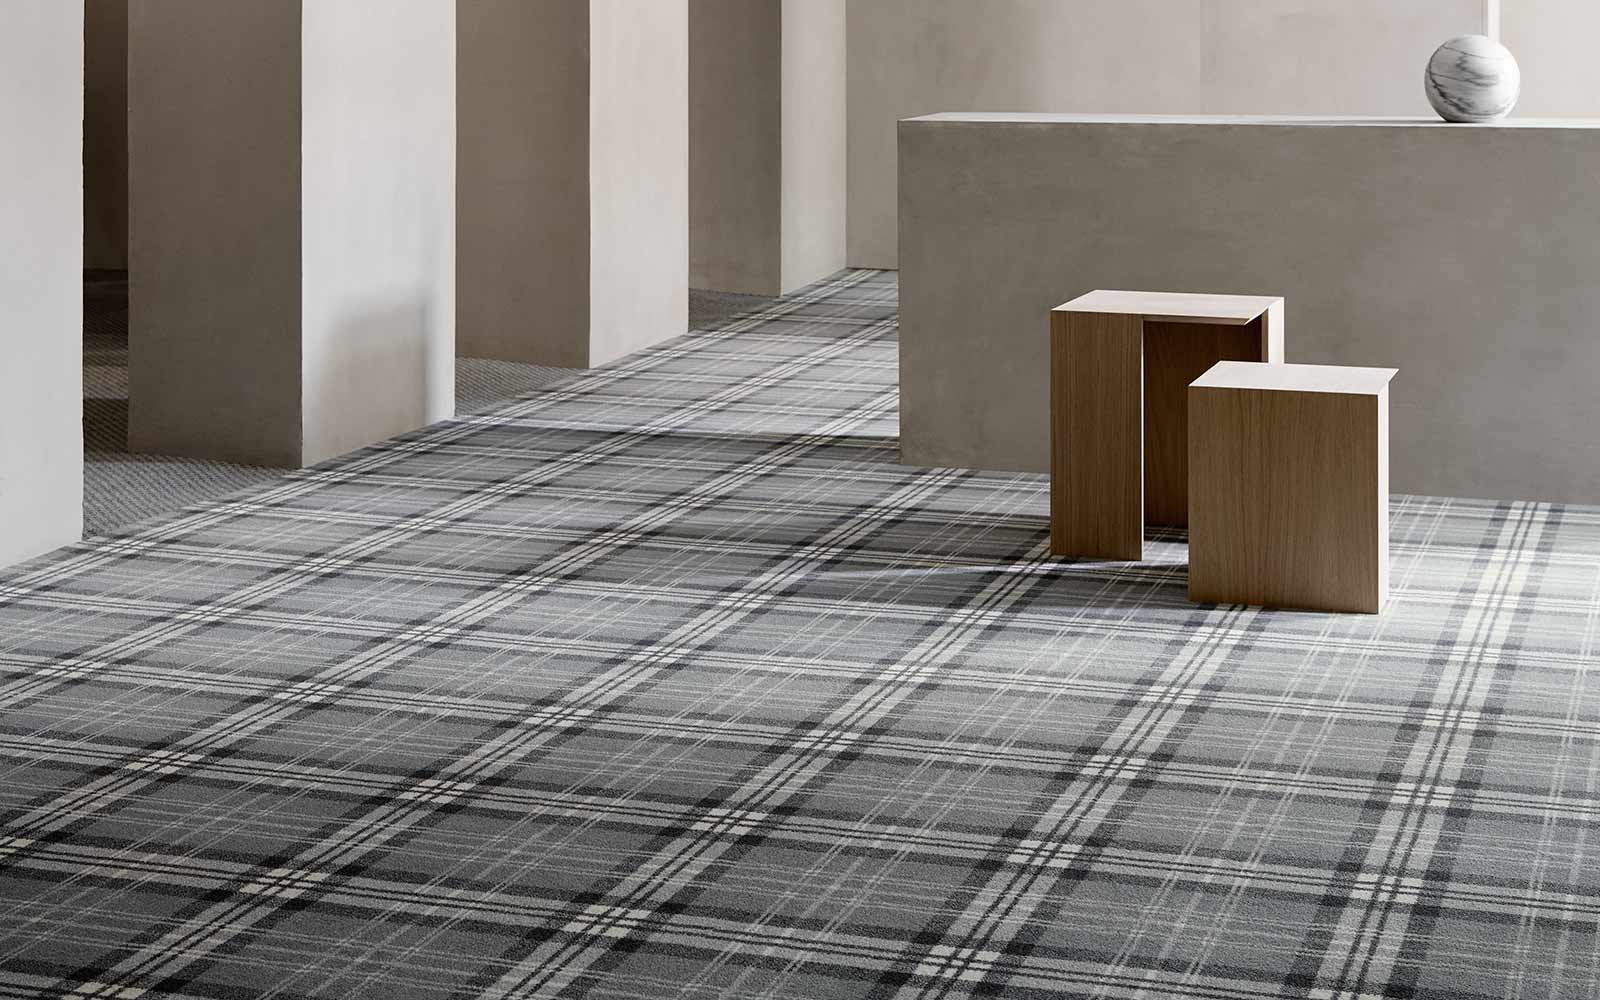 Teppich im grauen Schottenmuster mit modernen Sitzhockern |Teppichboden mit Textur und Struktur